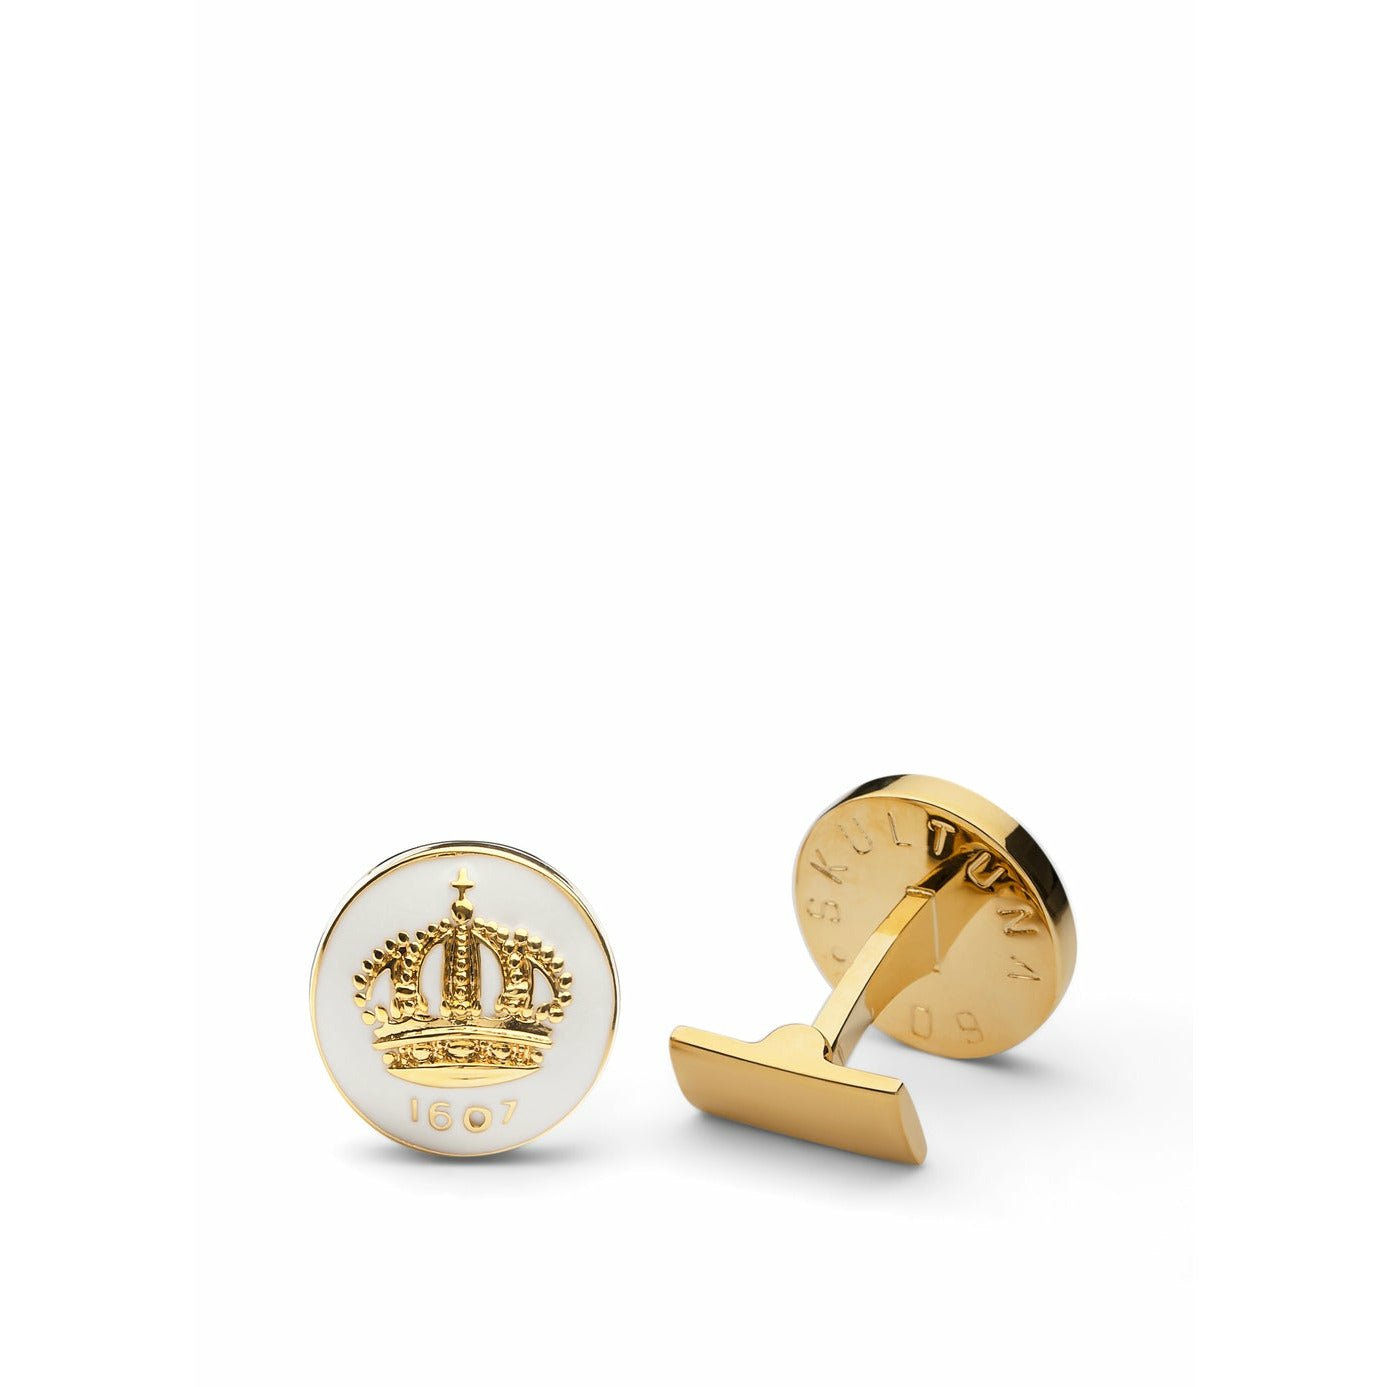 Skultuna Crown Gold Manschettenknopf ø1,7 Cm, Elfenbeinweiß